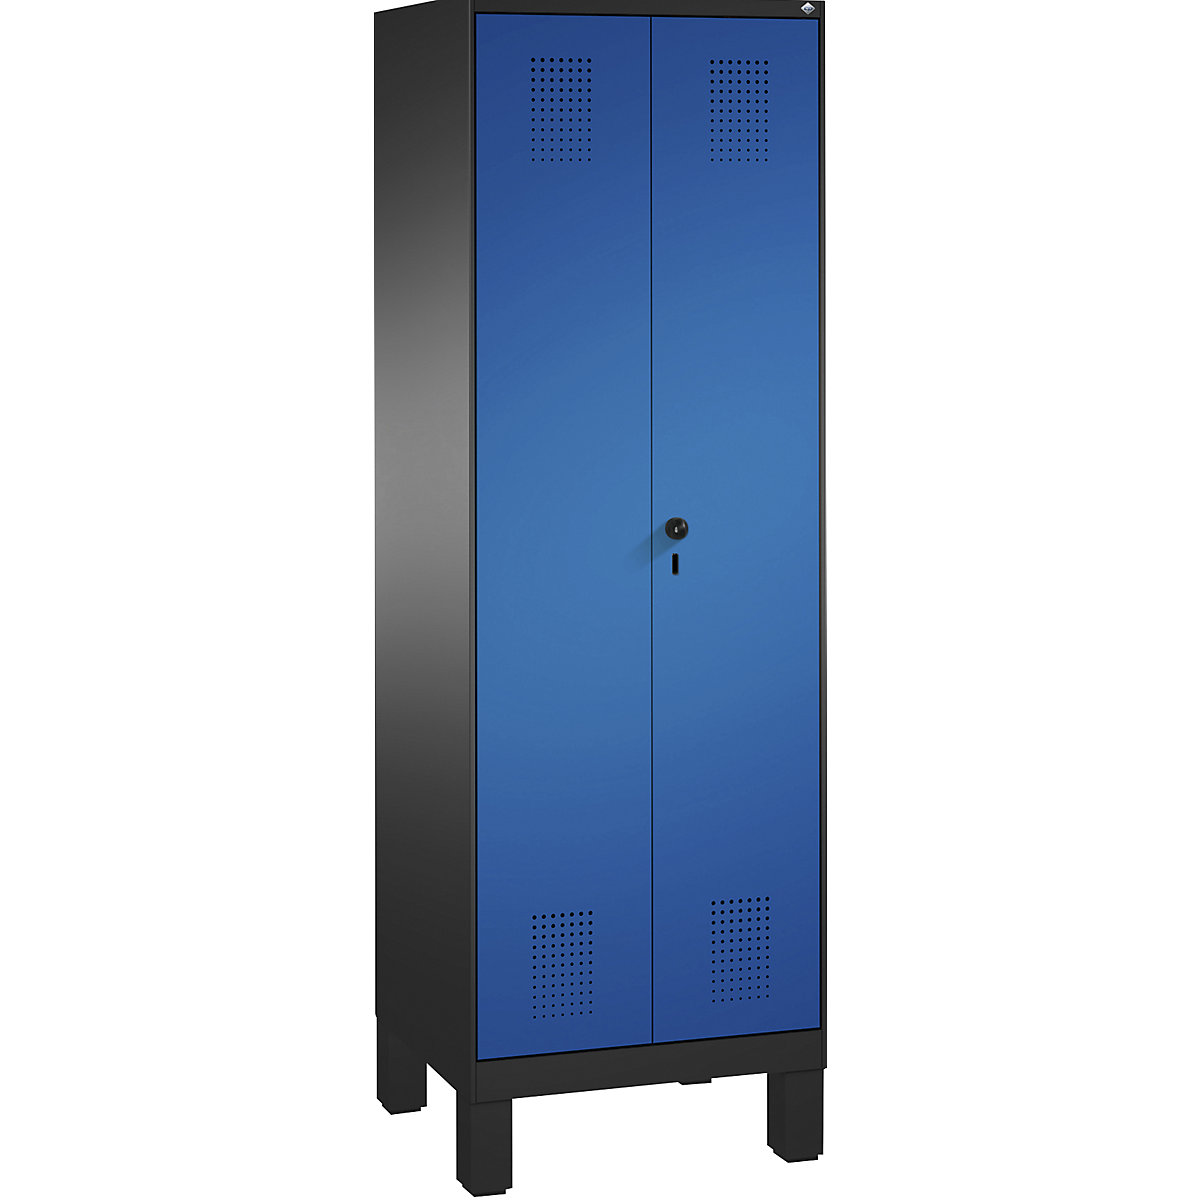 EVOLO takarítószer-/készüléktároló szekrény – C+P, rövidített válaszfal, 6 akasztó, rekeszek 2 x 300 mm, lábakkal, feketésszürke / enciánkék-10